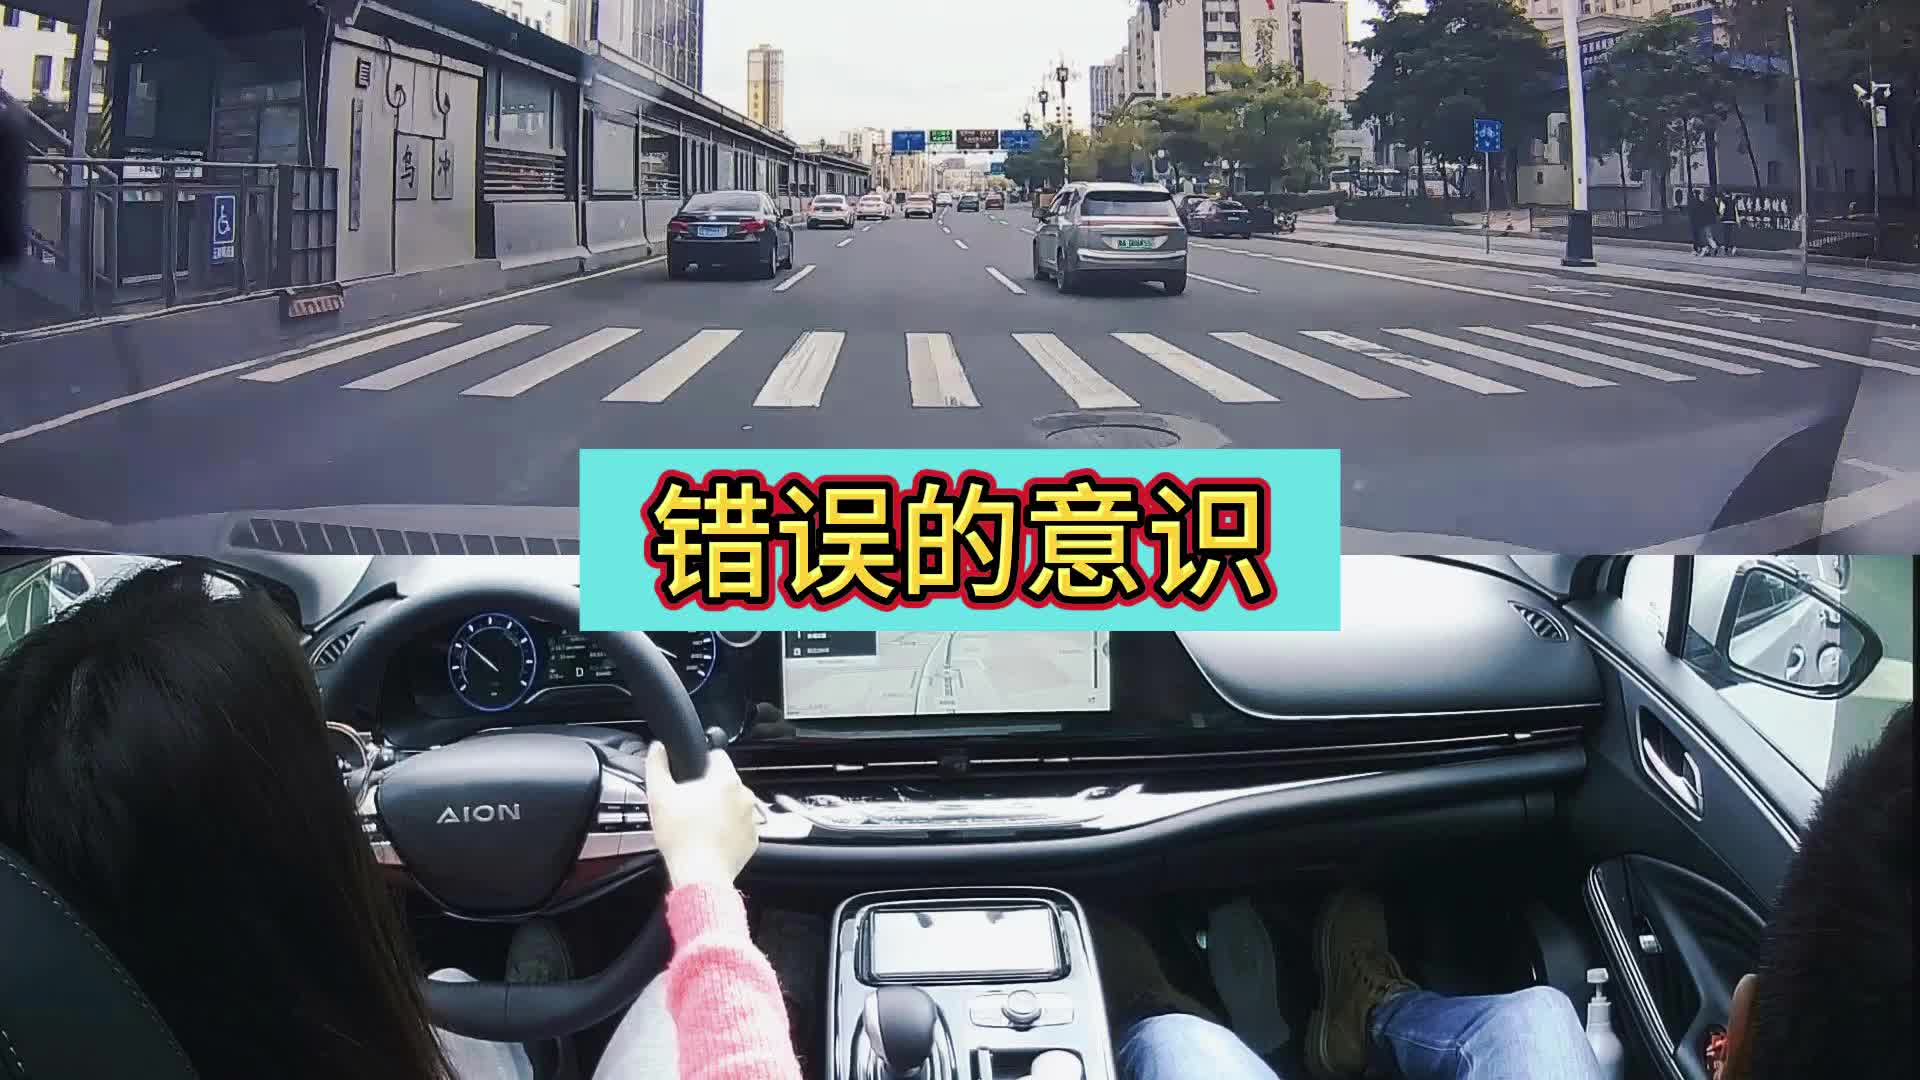 交叉手，很危险的-广州新起点陪驾陪练-广州新起点陪驾陪练-哔哩哔哩视频